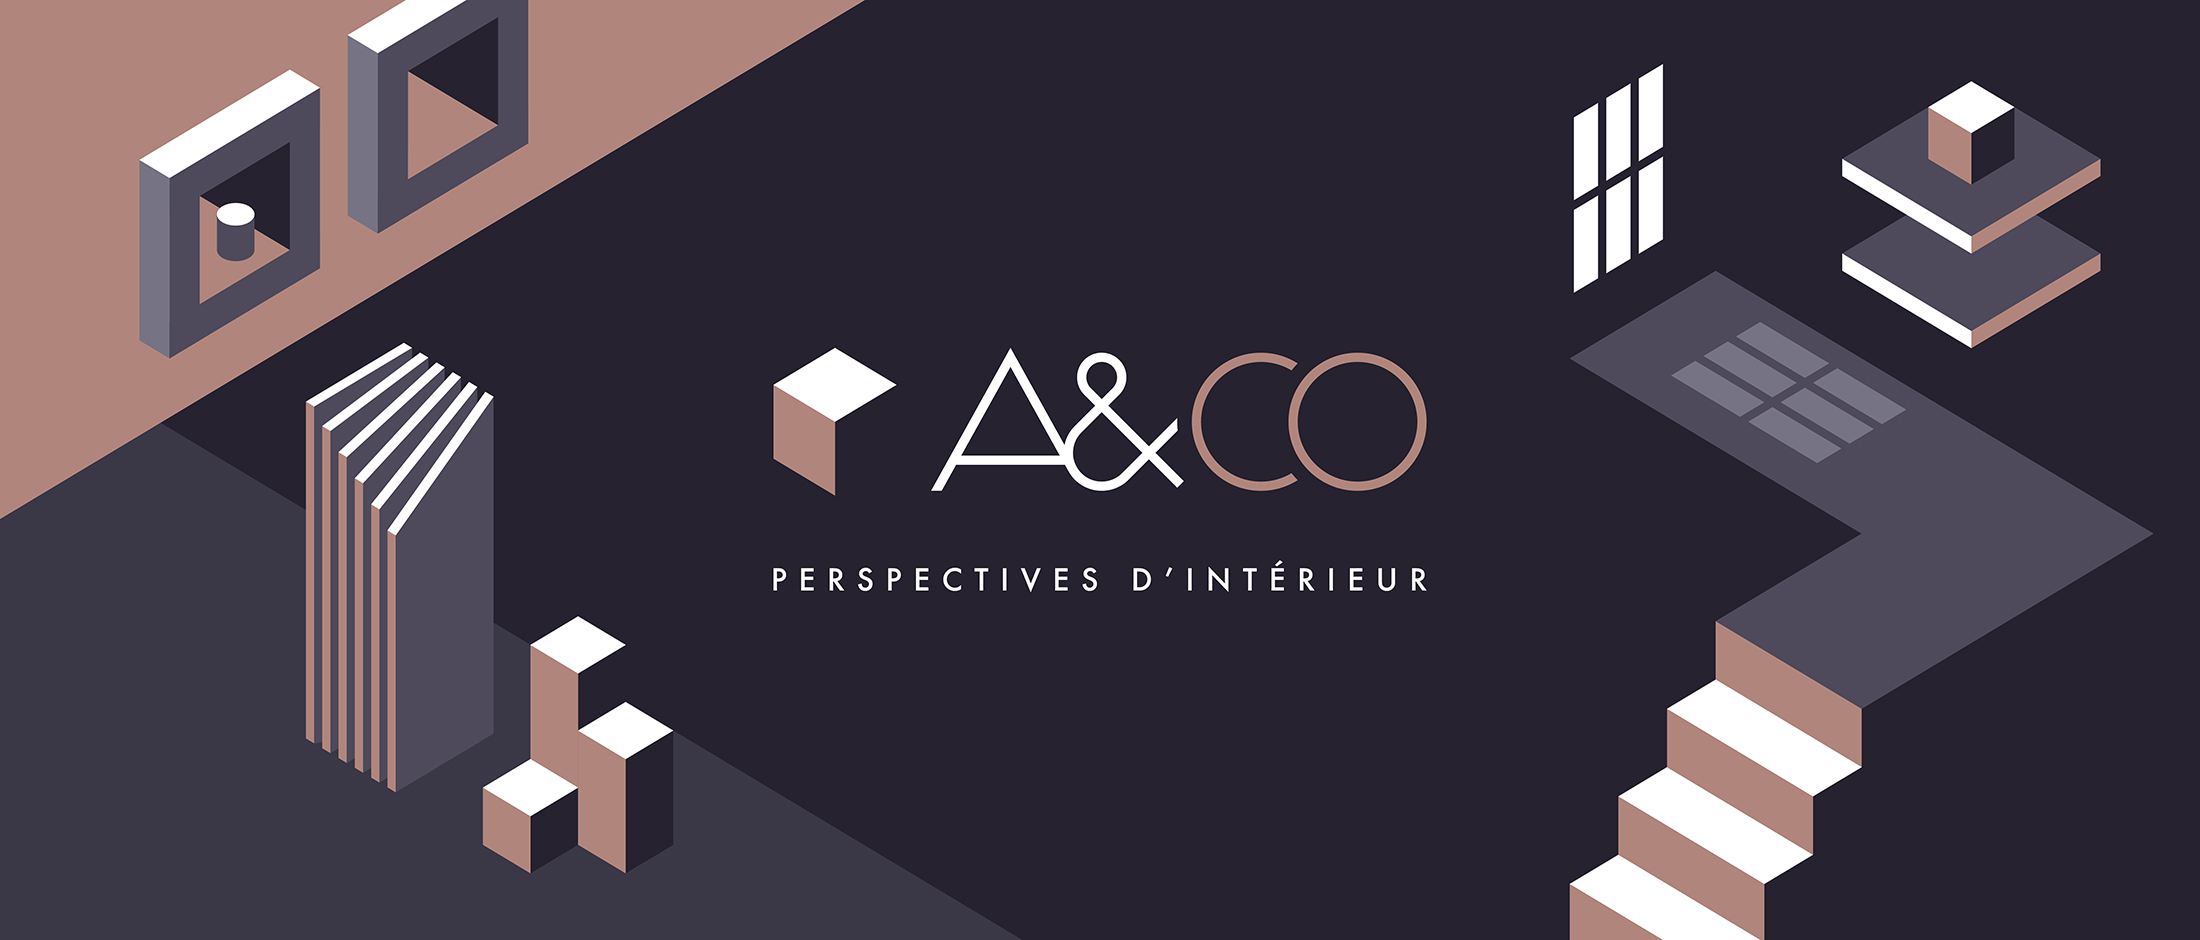 A&CO : Perspectives d’intérieur